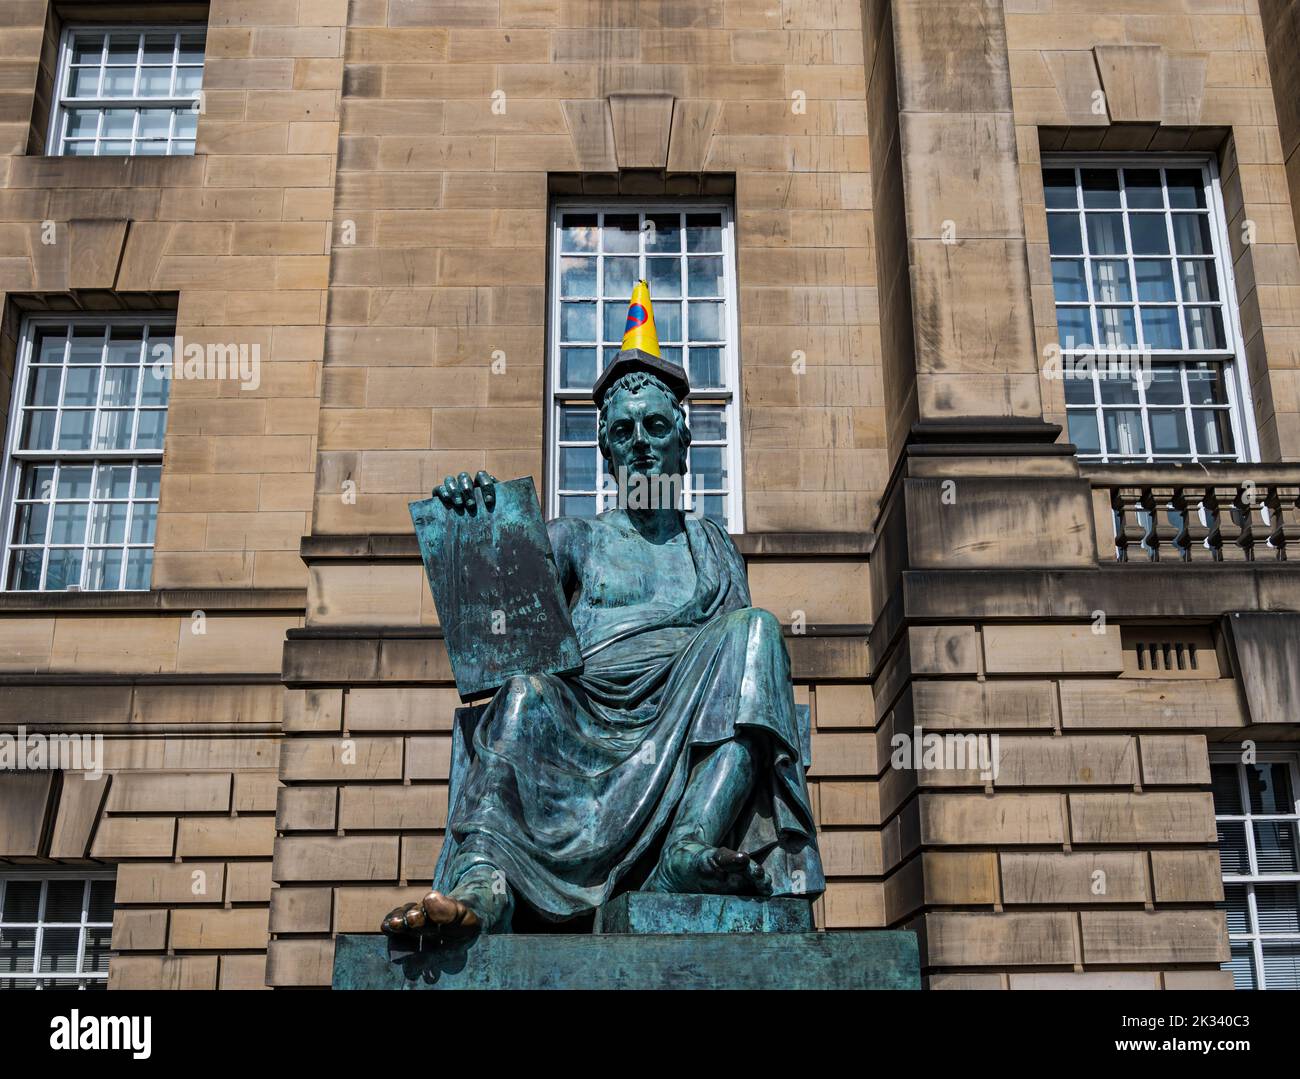 Statua in bronzo di David Hume con il piede strofinato e il cono stradale sulla sua testa, Royal Mile, Edimburgo, Scozia, Regno Unito Foto Stock